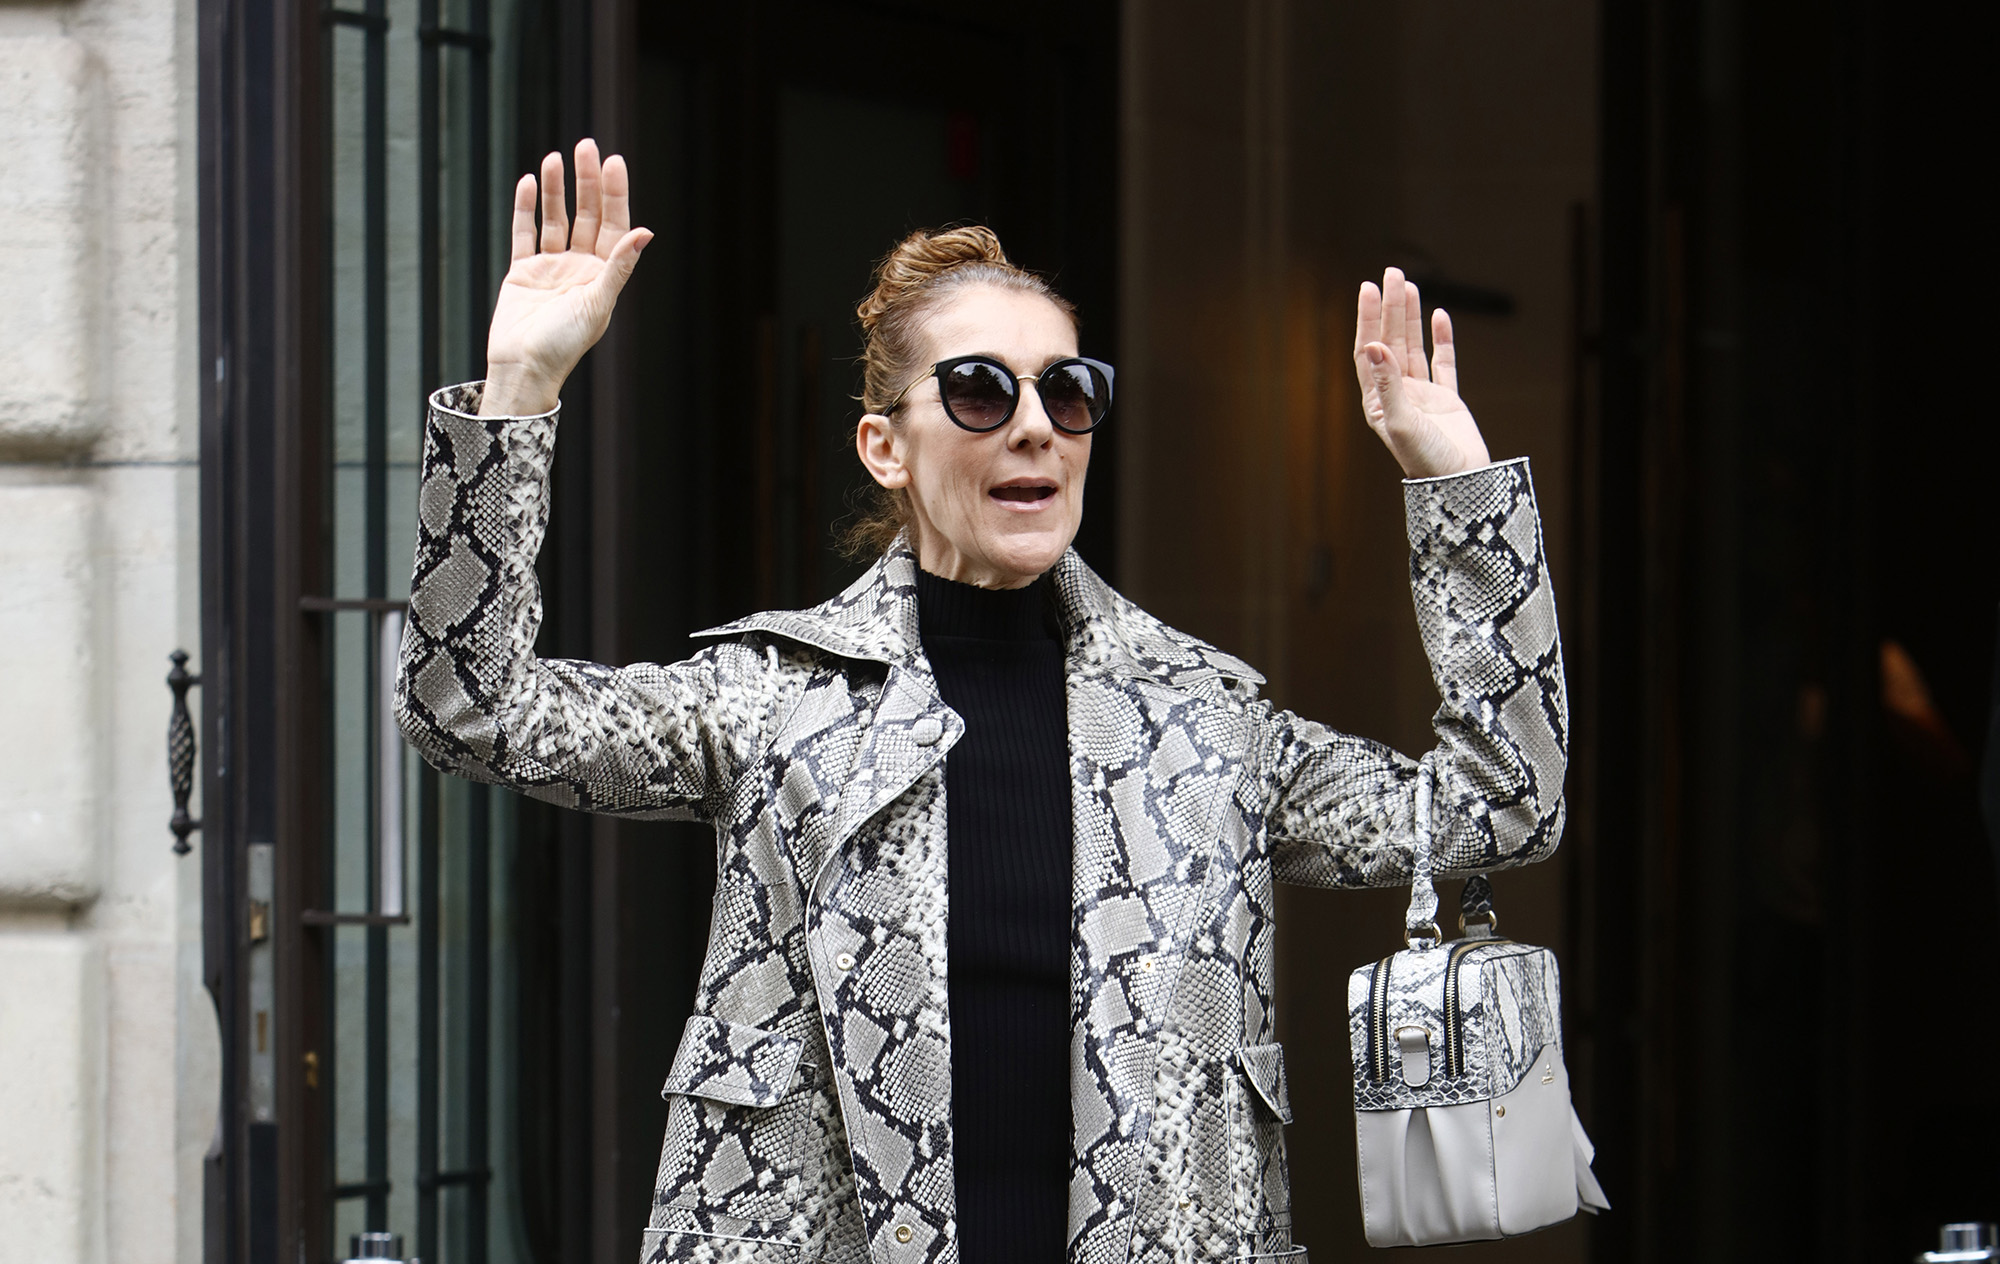 Celine Dion leaves her hotel in Paris